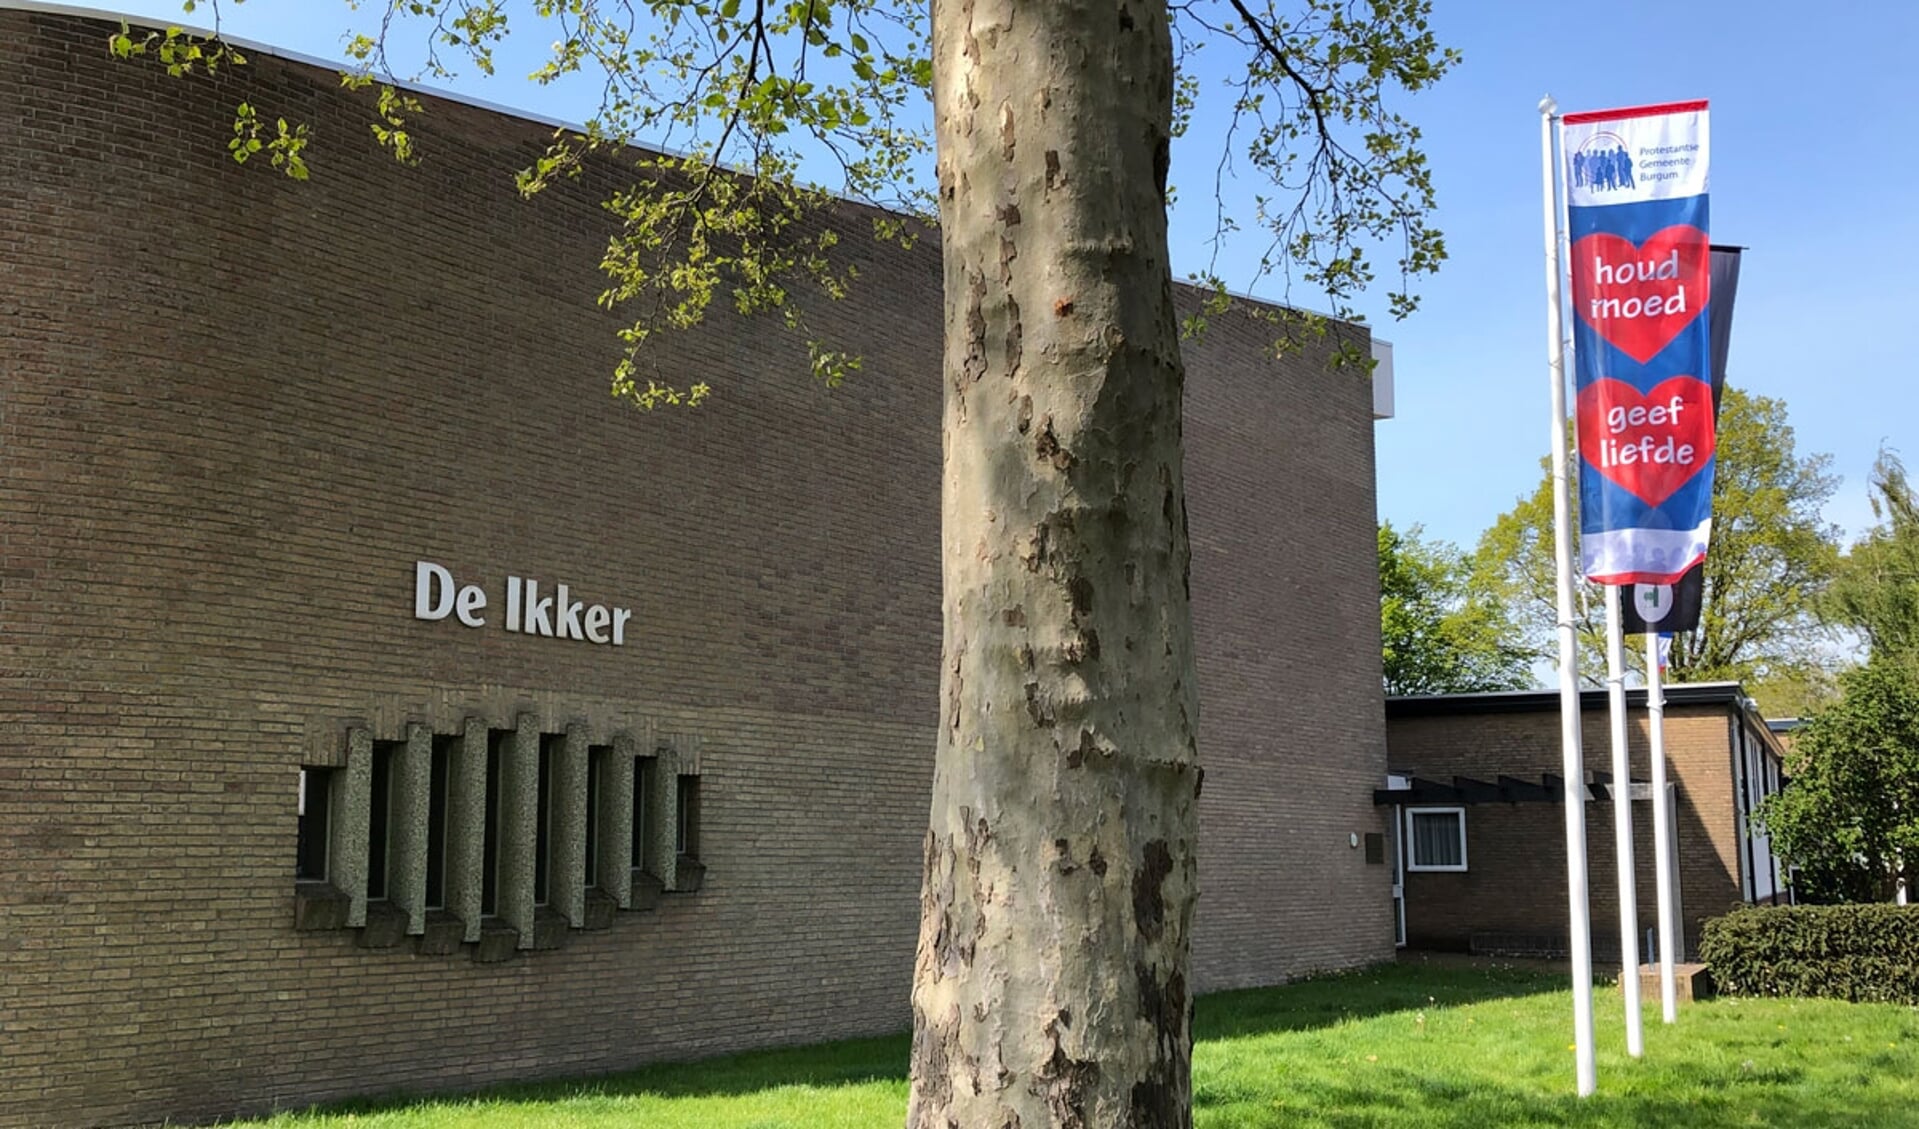 Kerk De Ikker in Burgum.